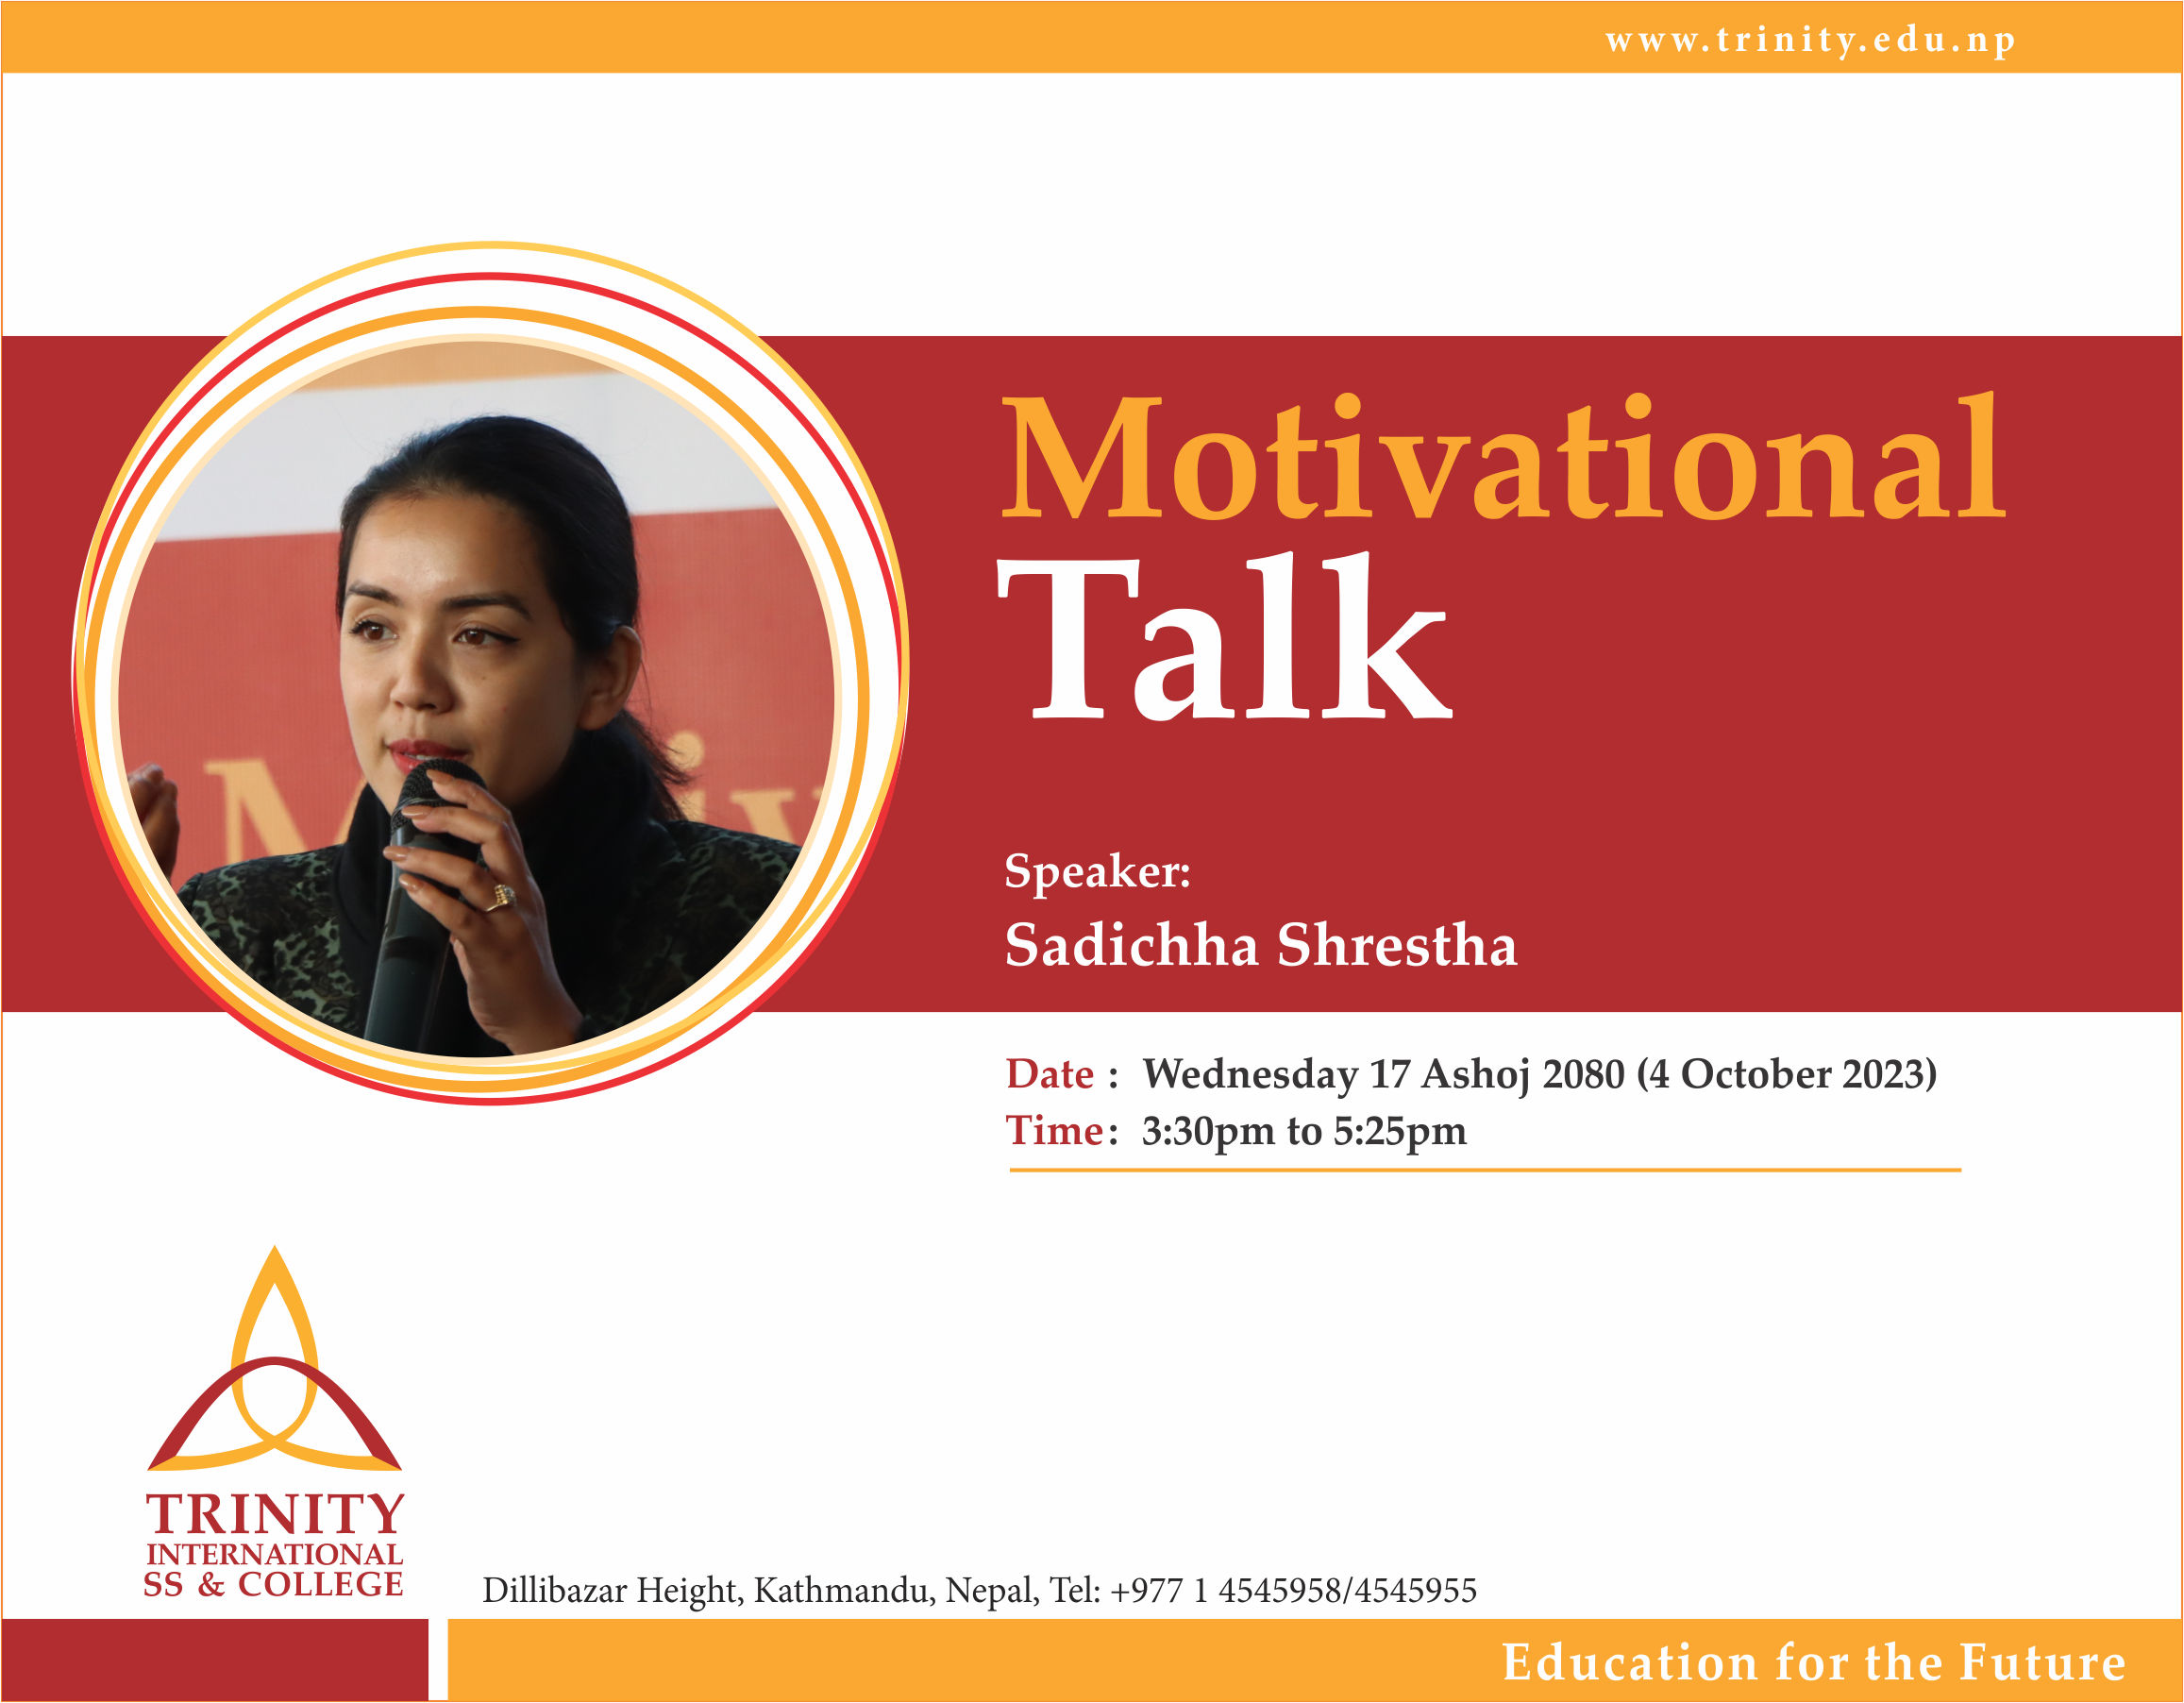 Motivational Talk 2023 With Sadichha Shrestha